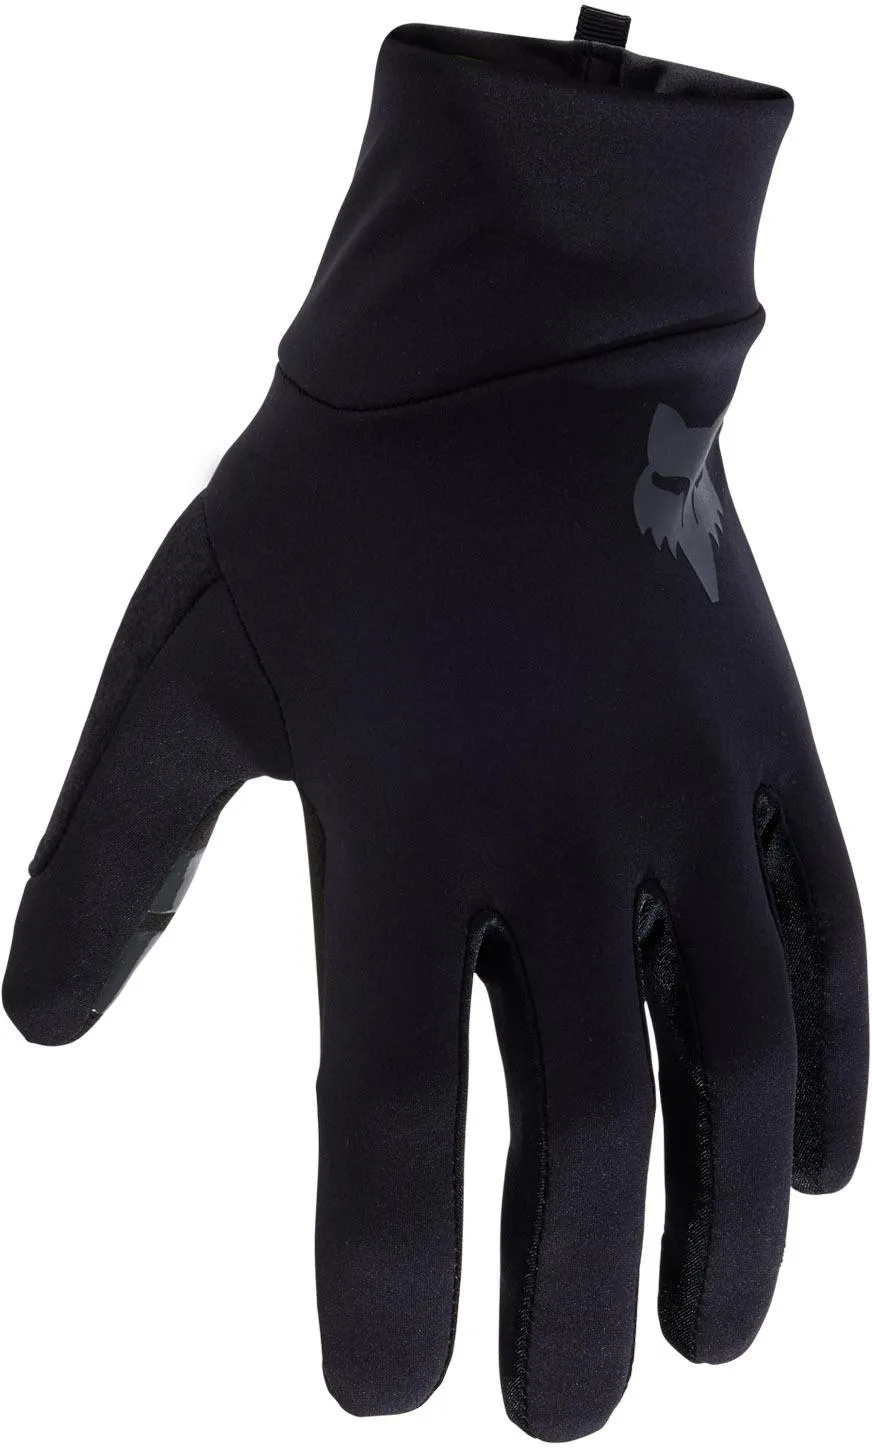  Ranger Fire Gloves, Black